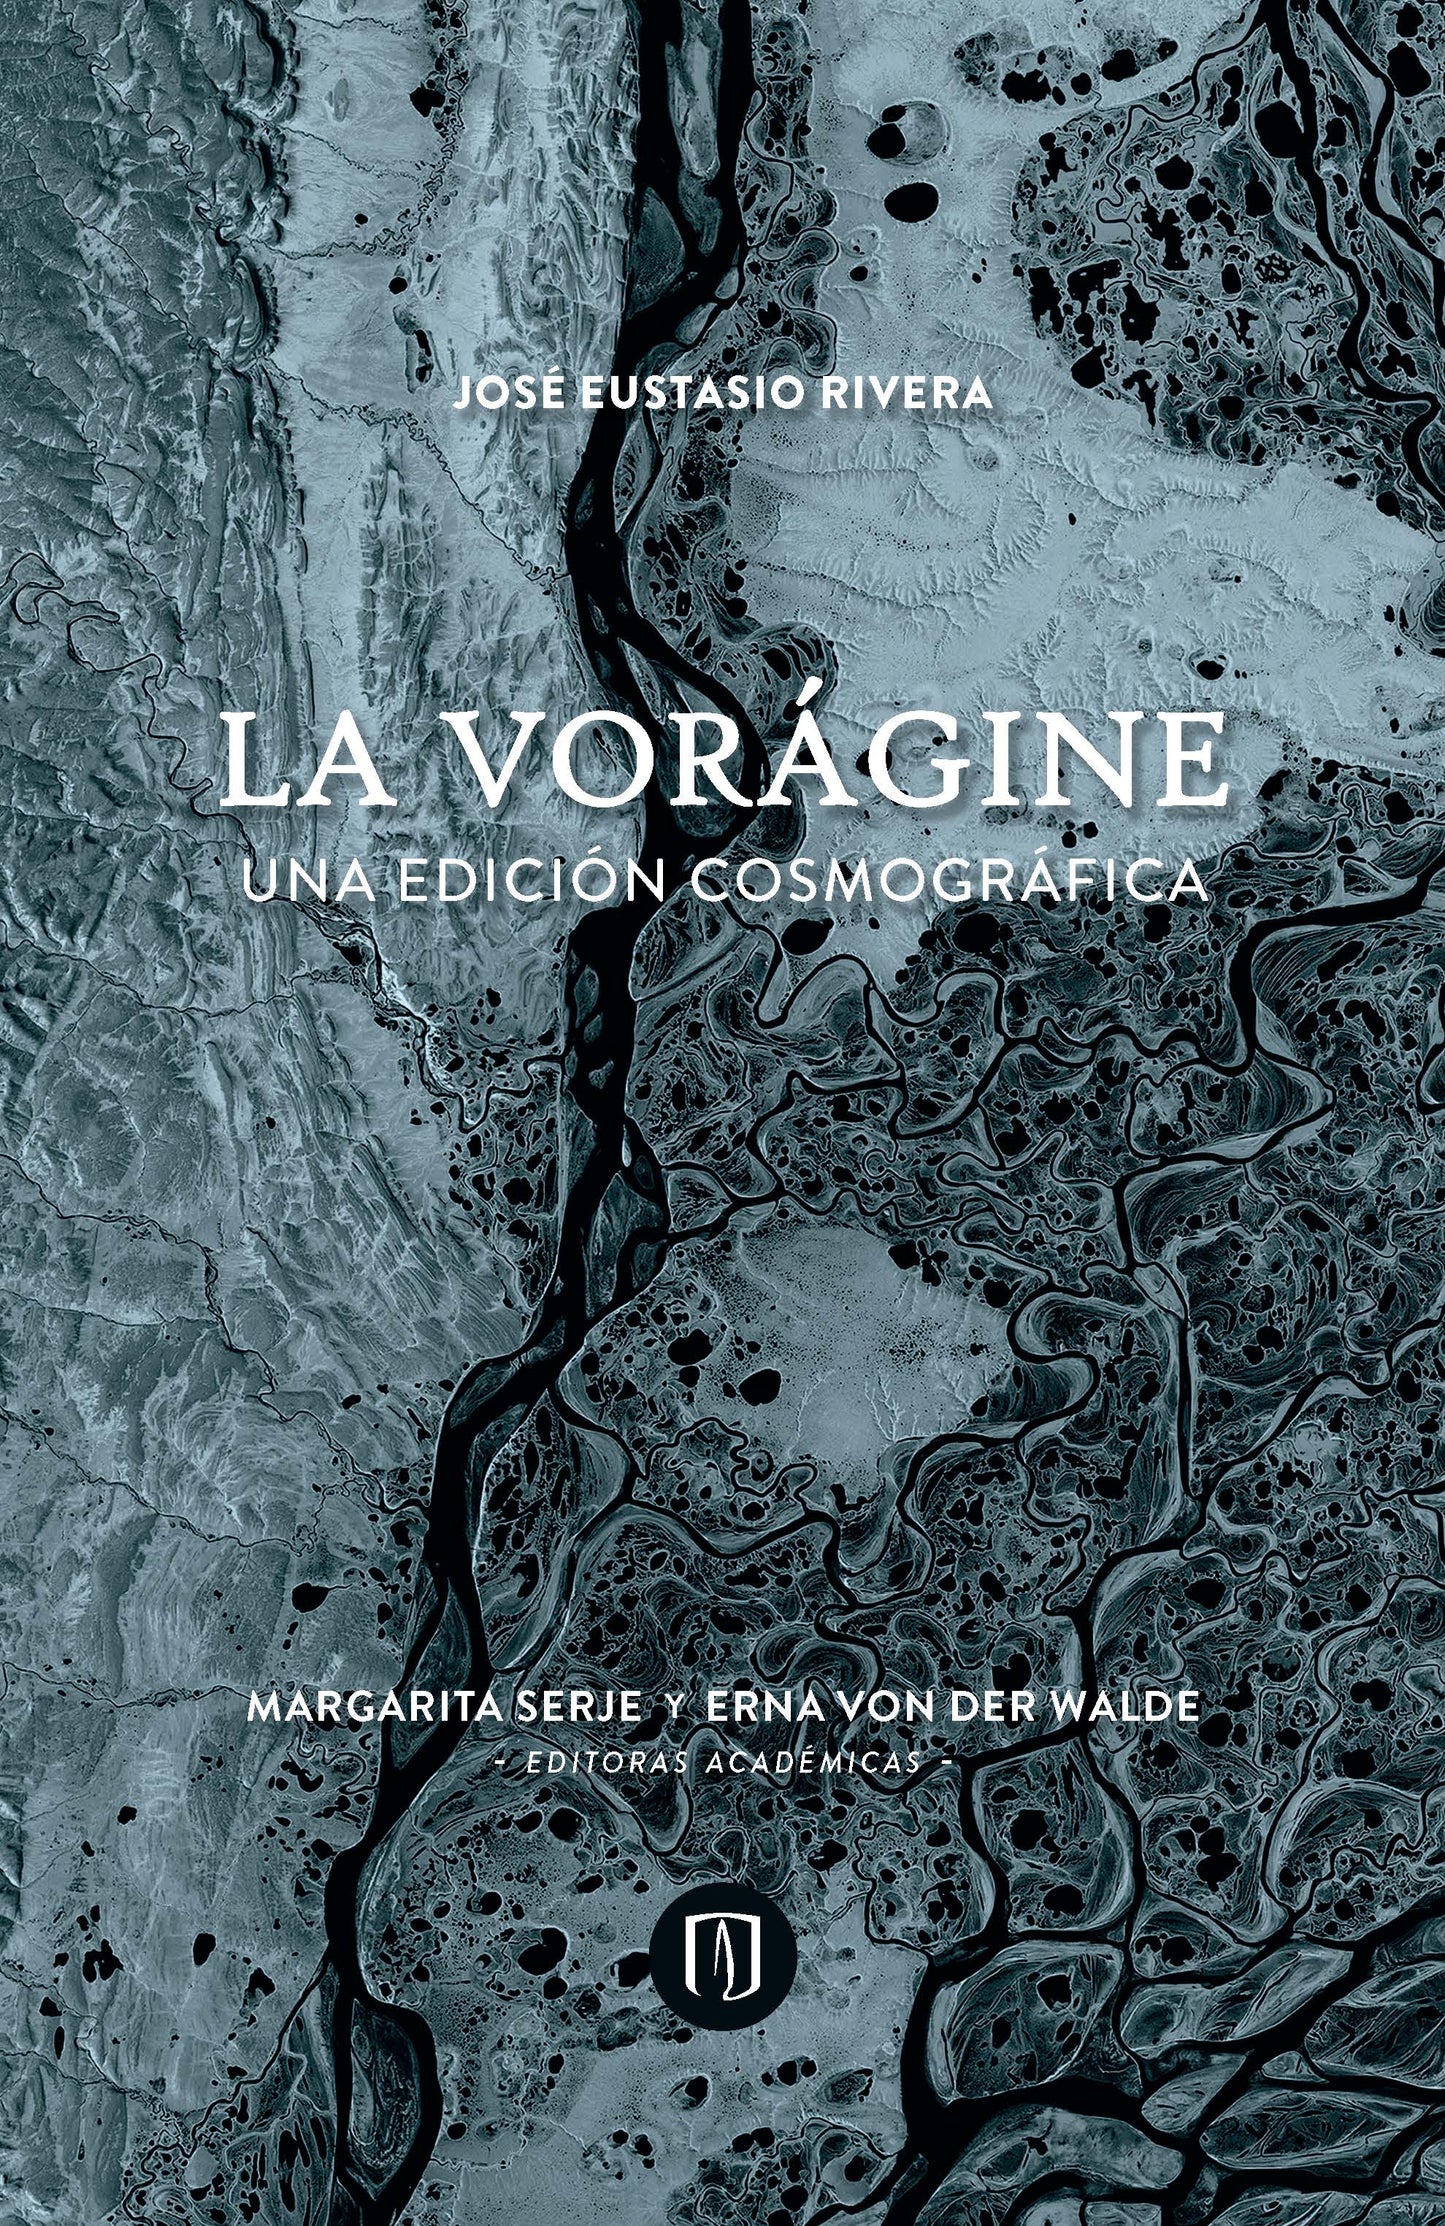 La vorágine. Una edición cosmográfica - José Eustacio Rivera